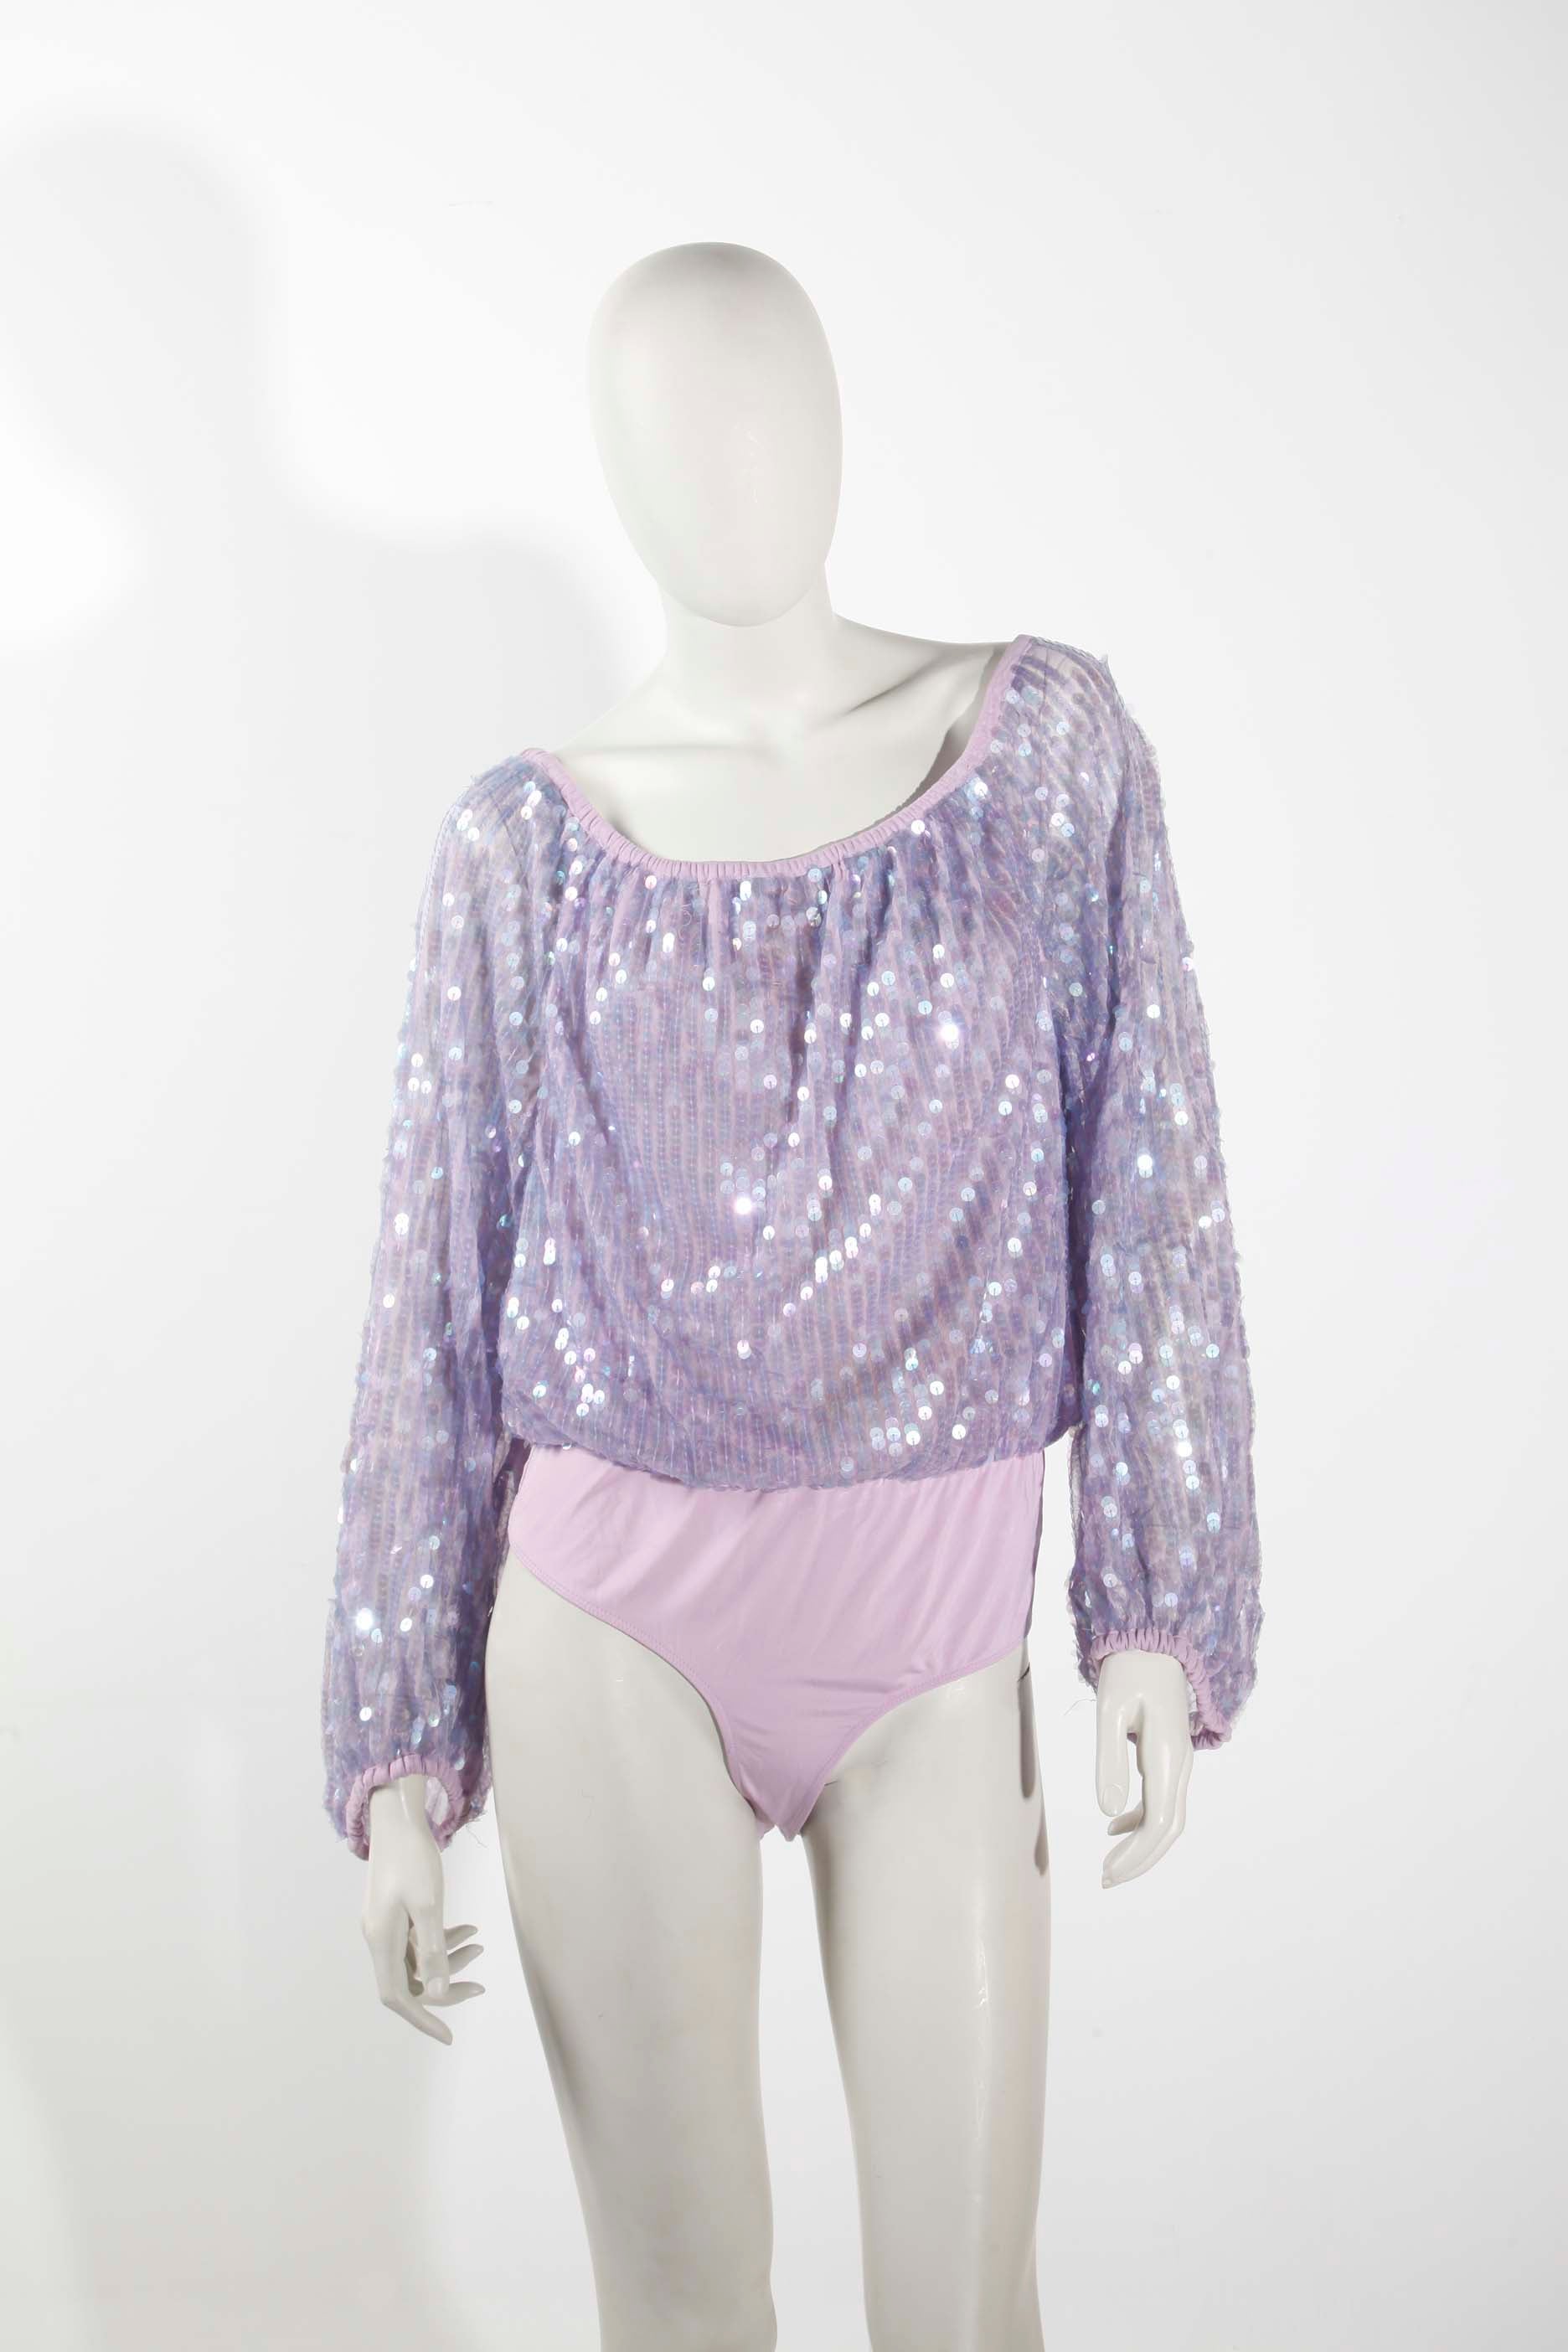 Purple Sequin Bodysuit (Medium)